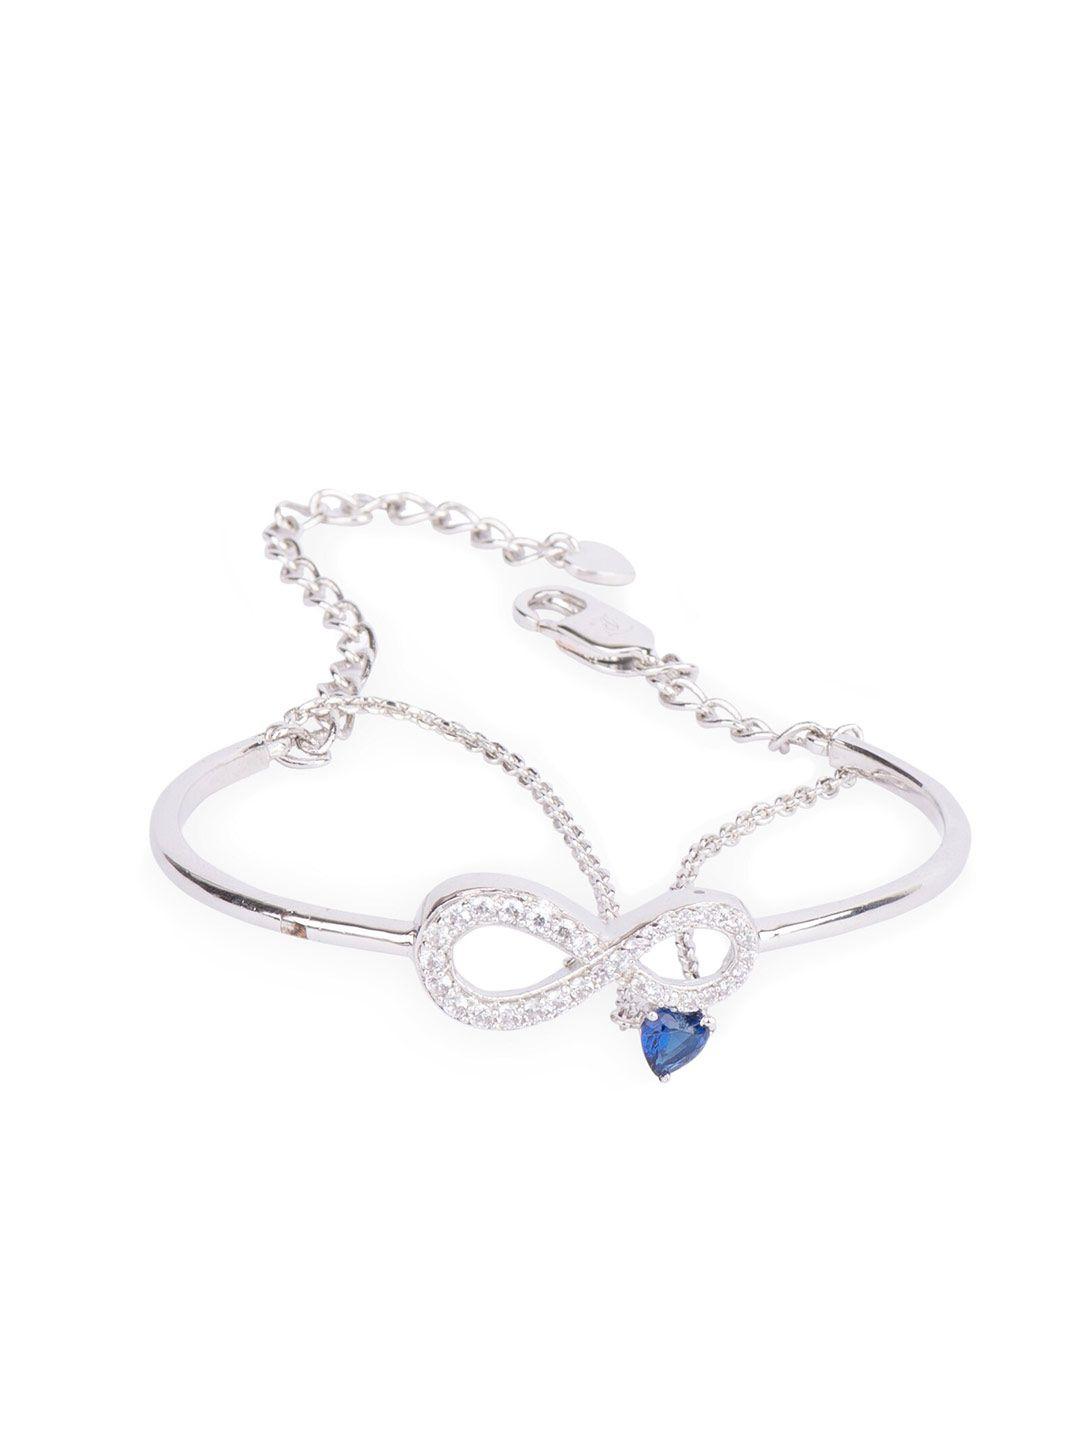 juicy couture women silver-toned & blue cubic zirconia charm bracelet